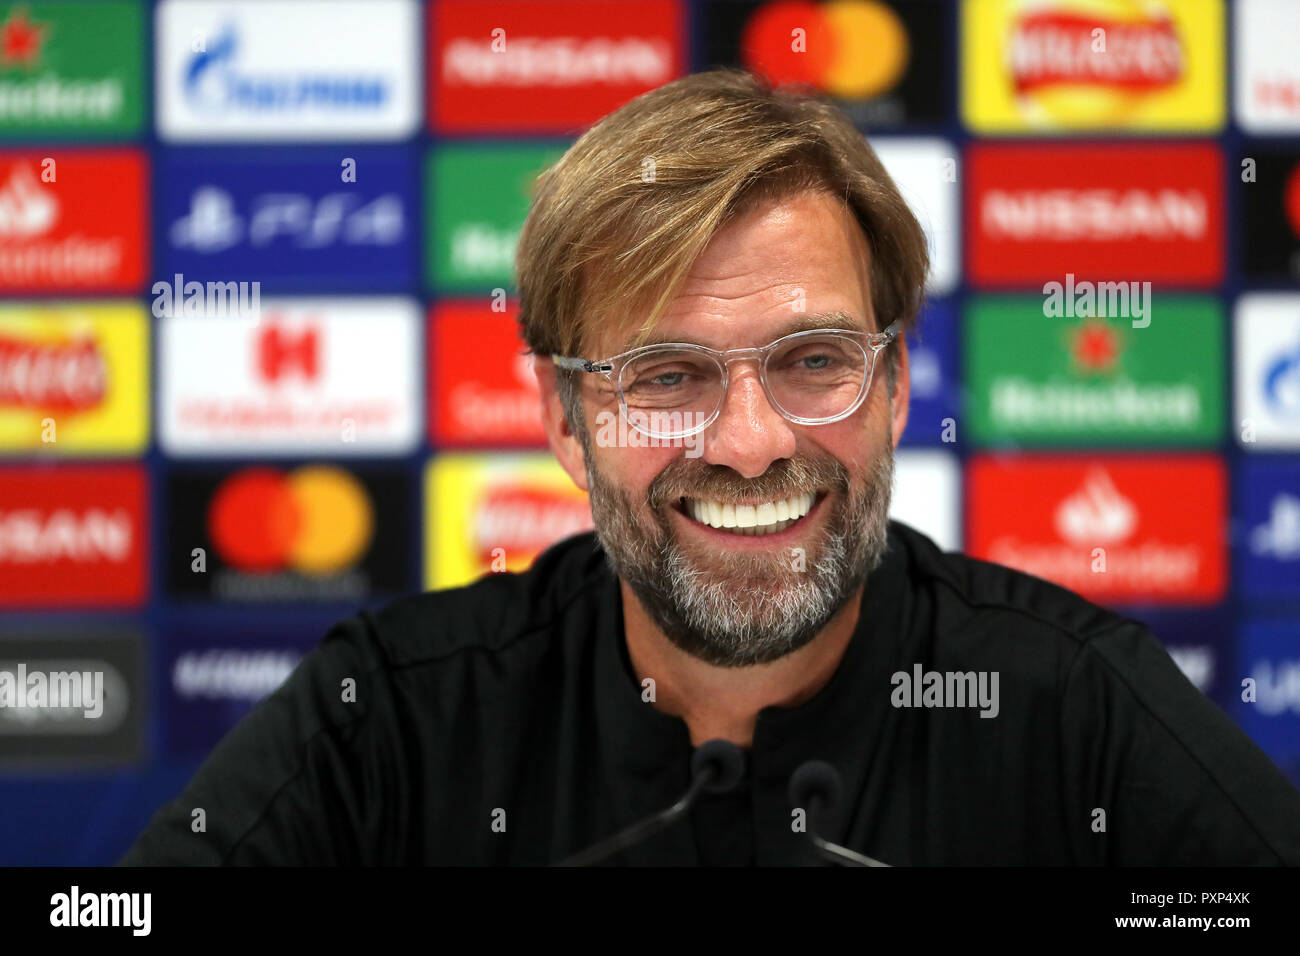 Manager del Liverpool Jurgen Klopp durante la conferencia de prensa en Anfield, Liverpool. Foto de stock